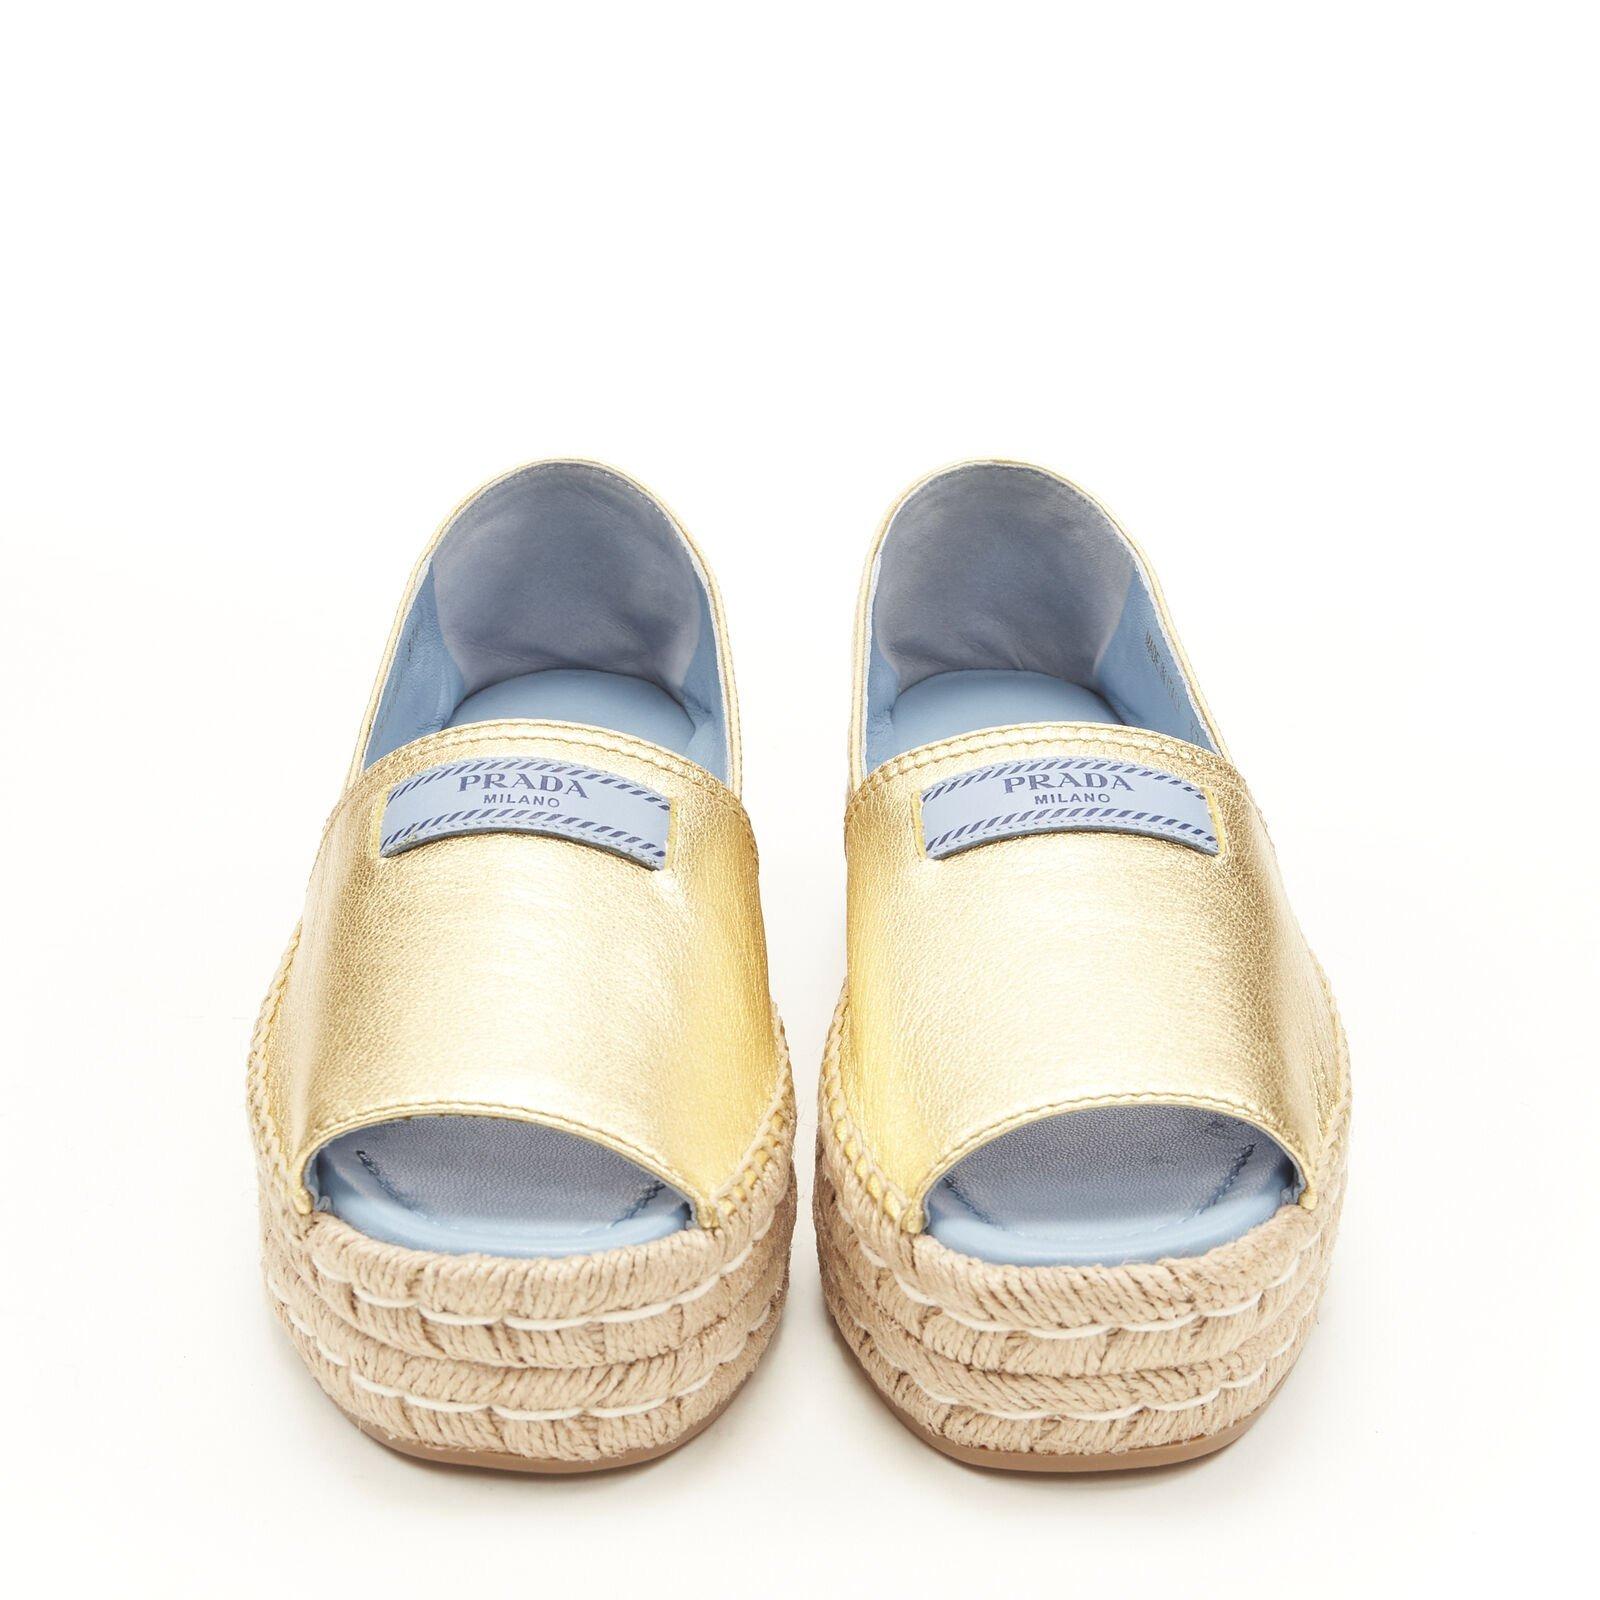 Chaussures espadrilles compensées PRADA à bout ouvert en cuir doré métallisé avec logo EU37, neuves Neuf à Hong Kong, NT